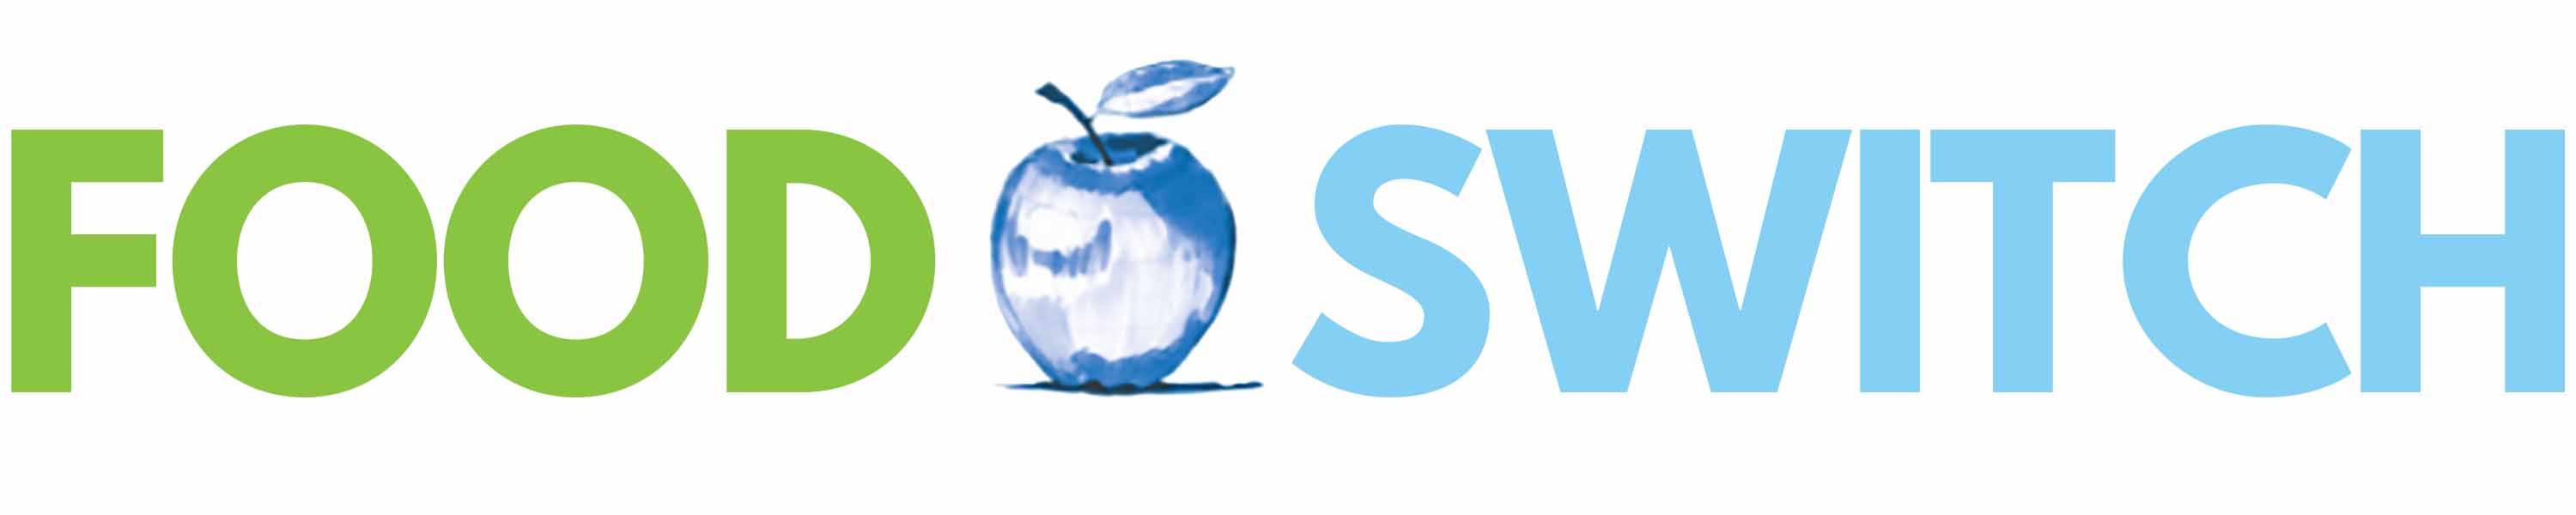 Food SWITCH logo